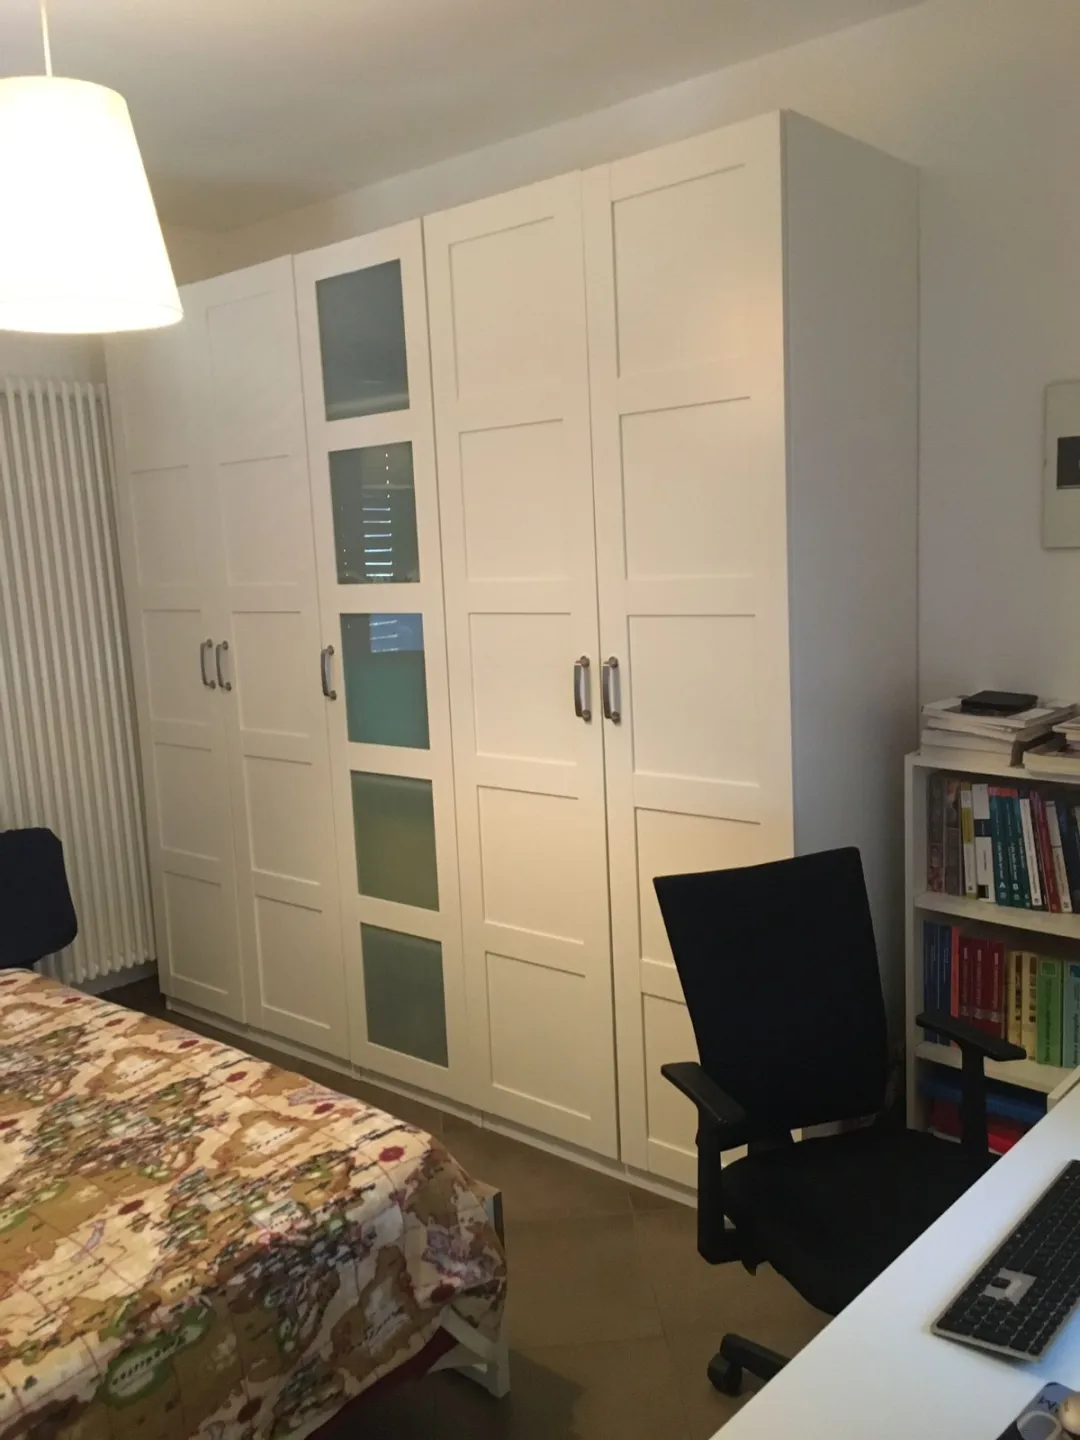 Immagine per Appartamento in vendita a Monteprandone via Miramare